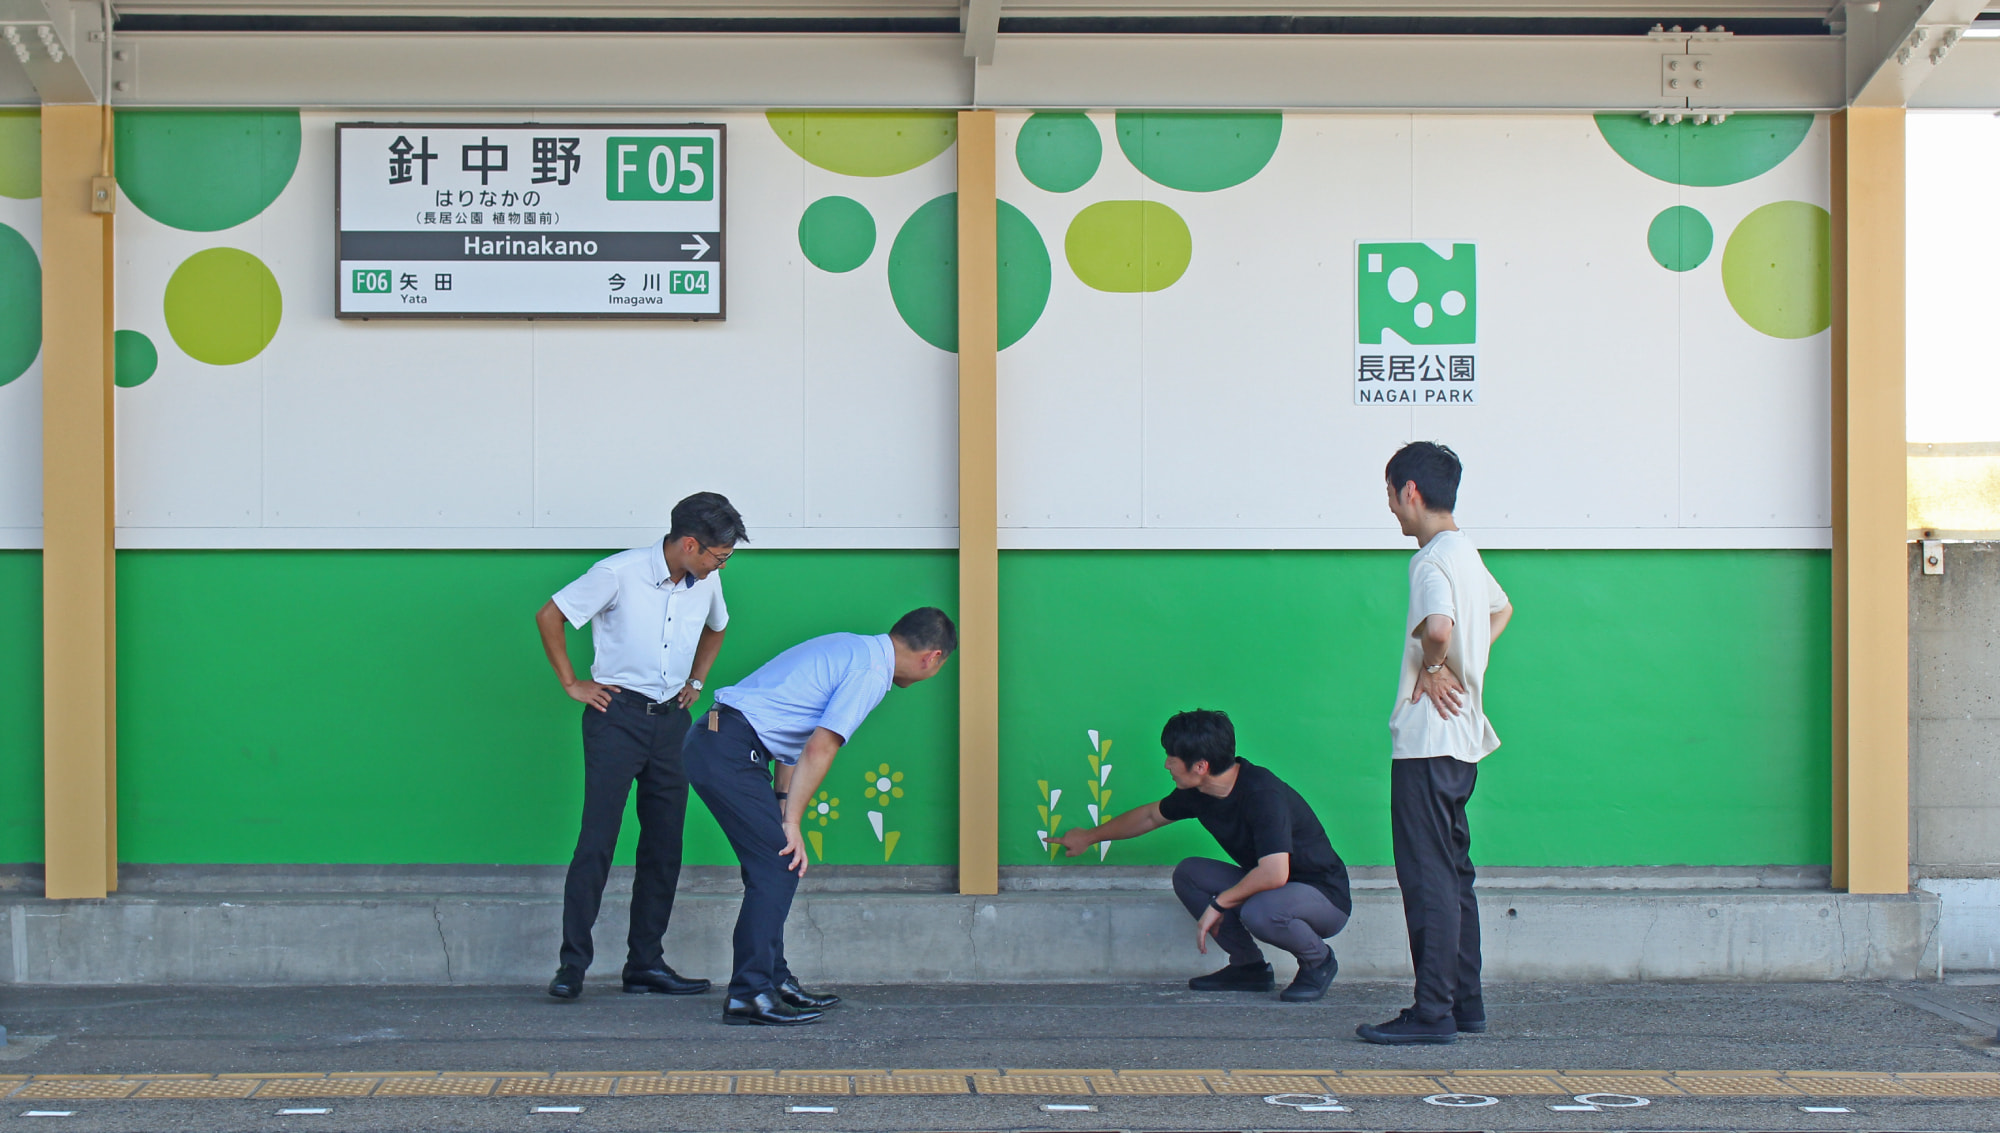 針中野駅と長居公園をつなぐ地域振興プロジェクトの写真